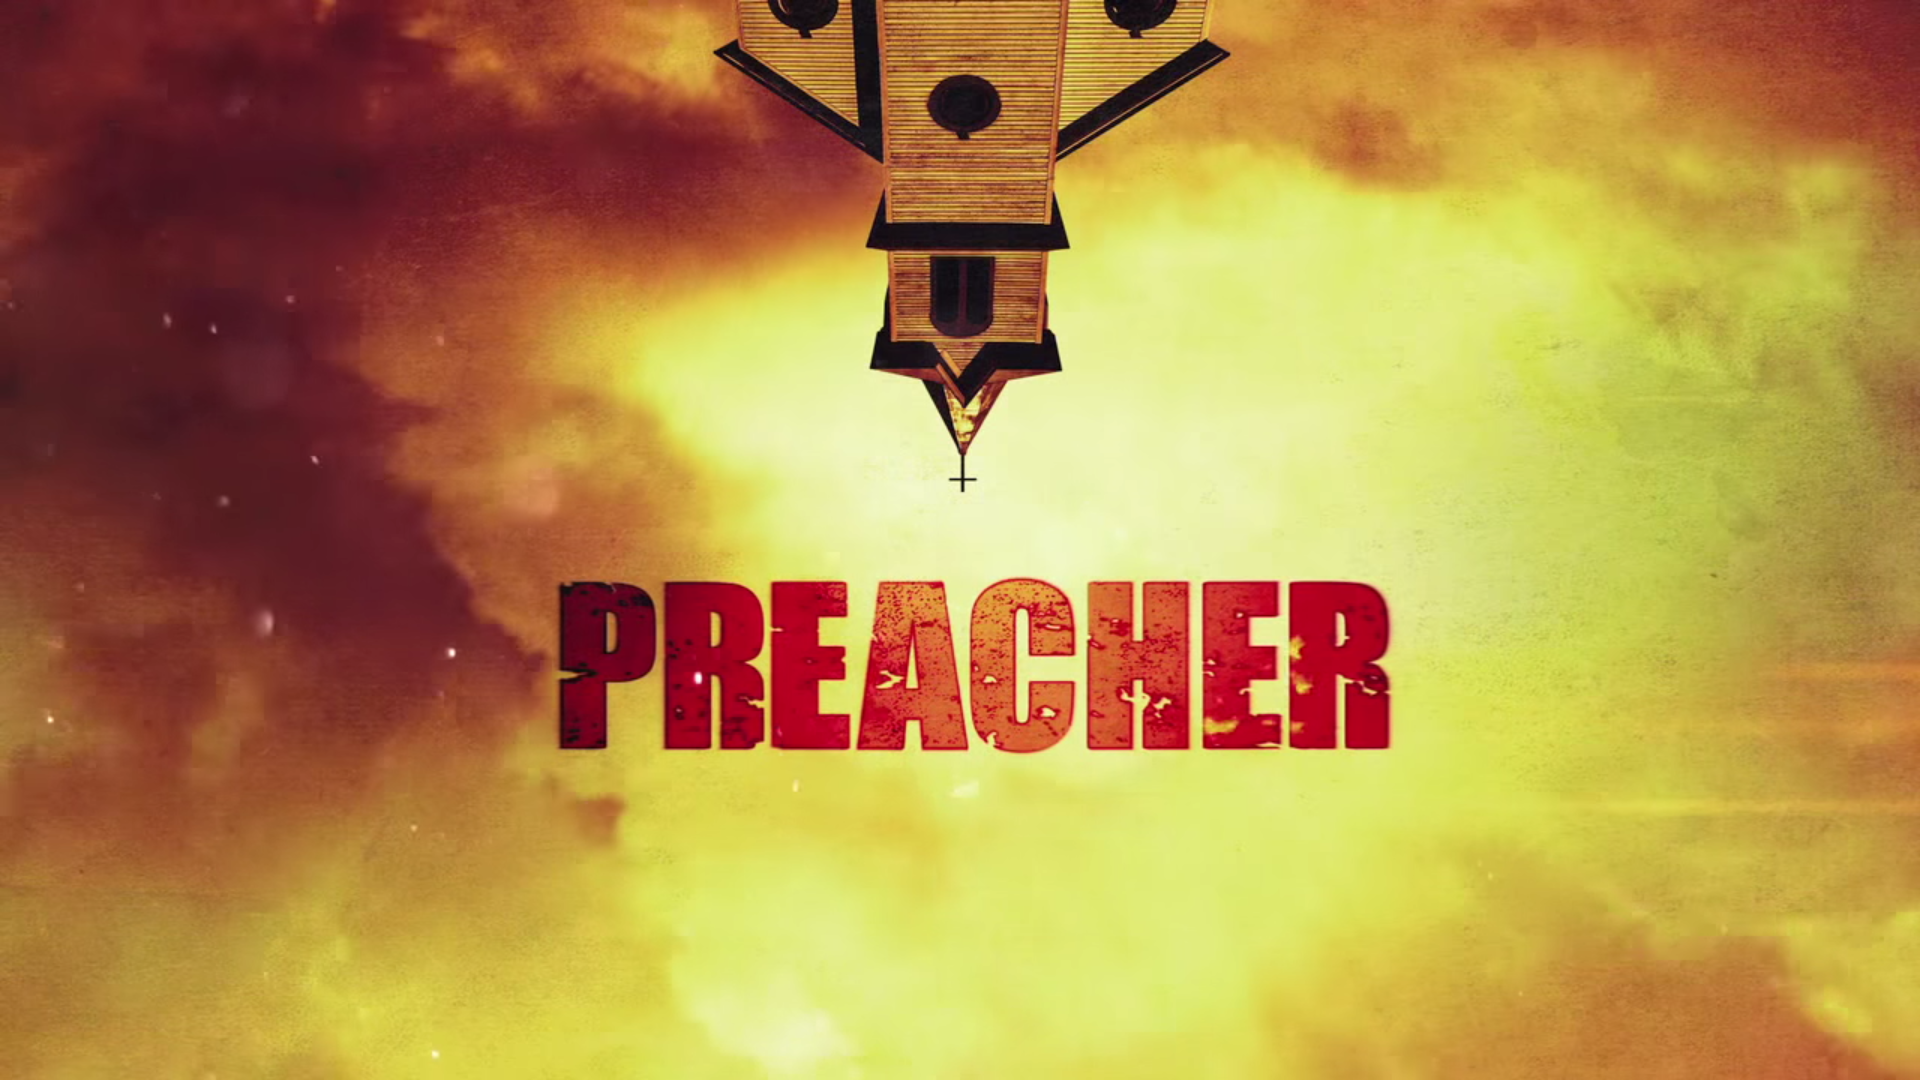 Preacher - Le prime immagini ufficiali dall'ultima stagione